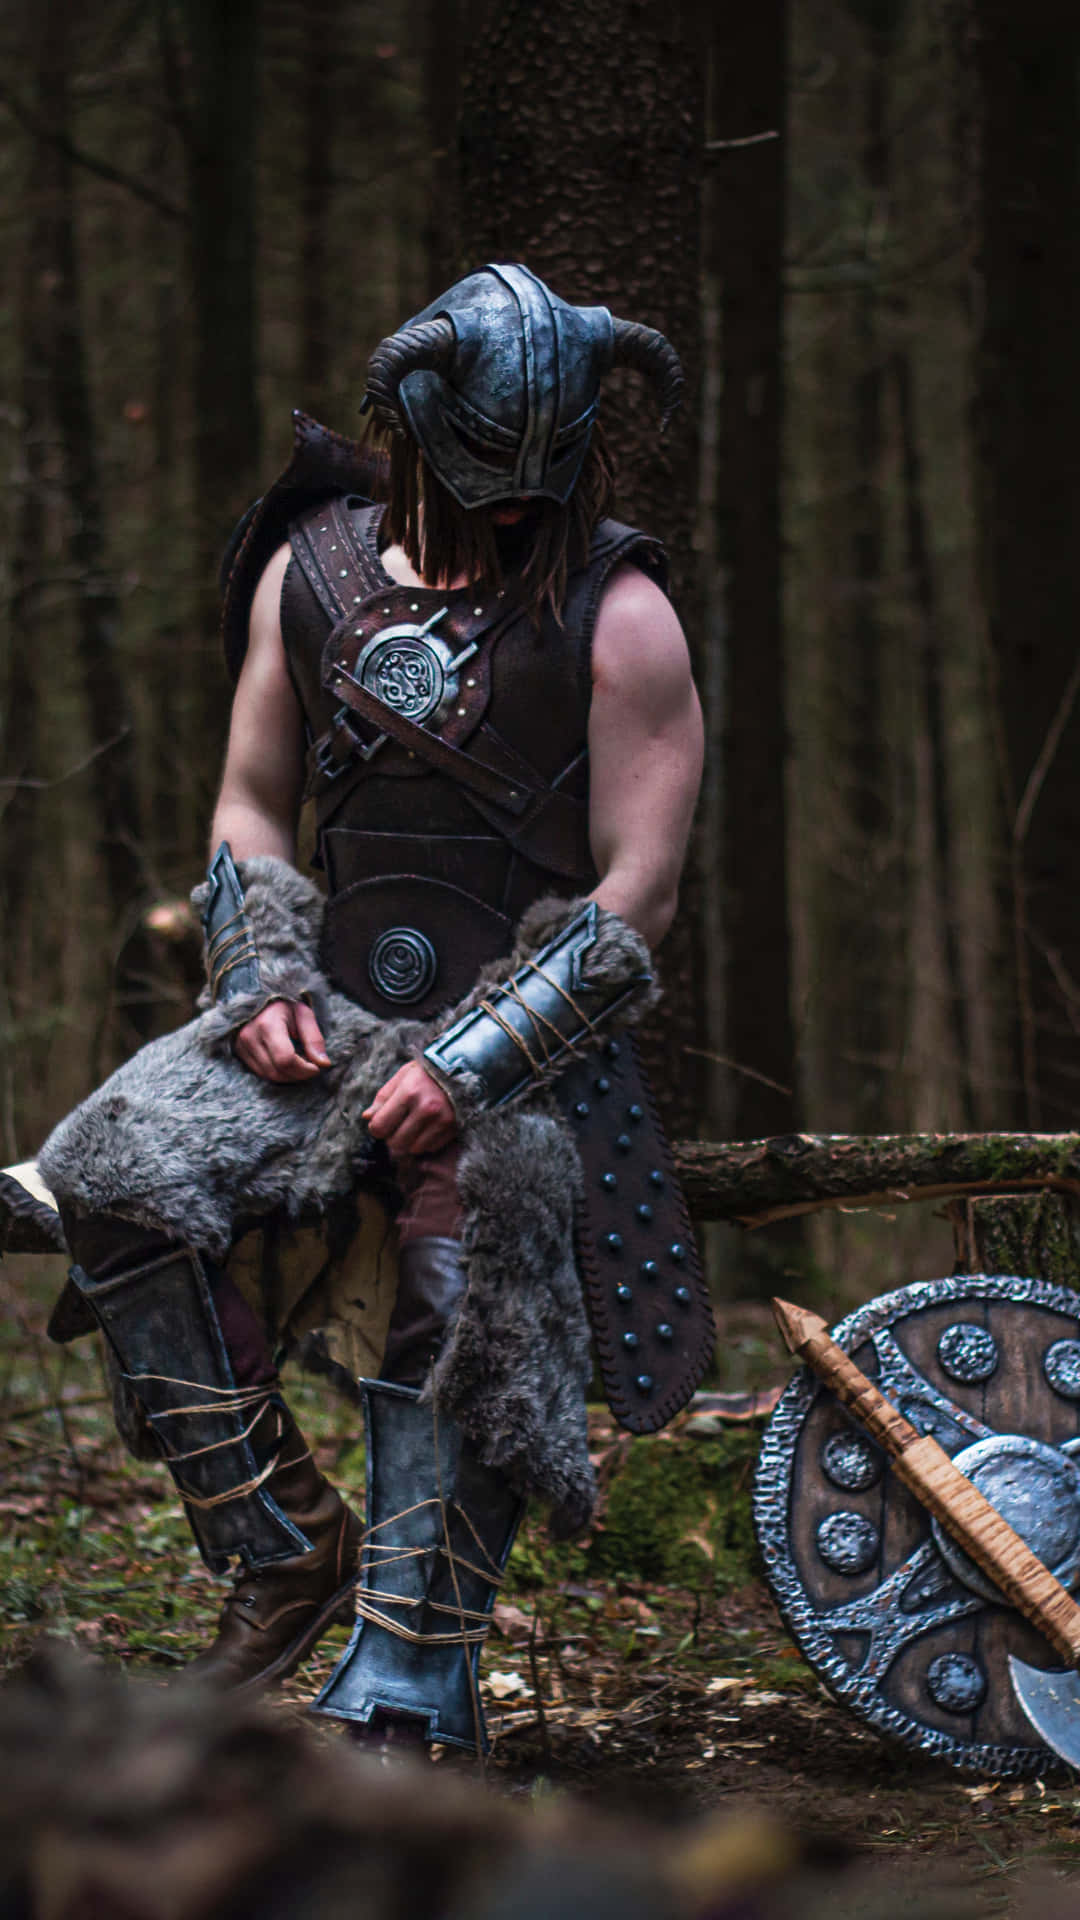 A fierce Viking warrior ready for battle.